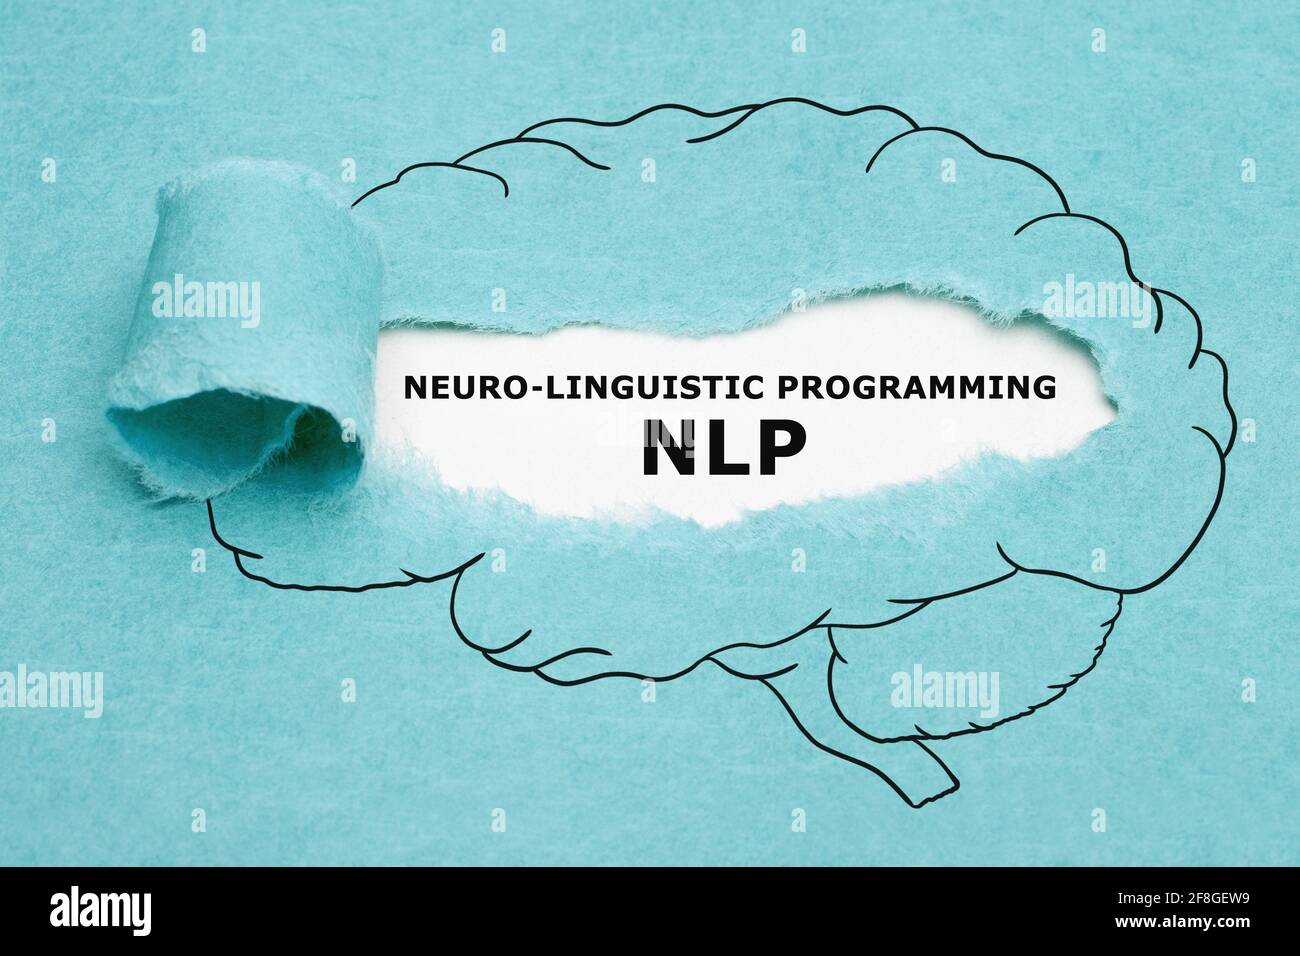 Acrónimo impreso NLP Neuro Lingüistic Programming aparece detrás de papel azul rasgado en el dibujo del cerebro humano. Foto de stock